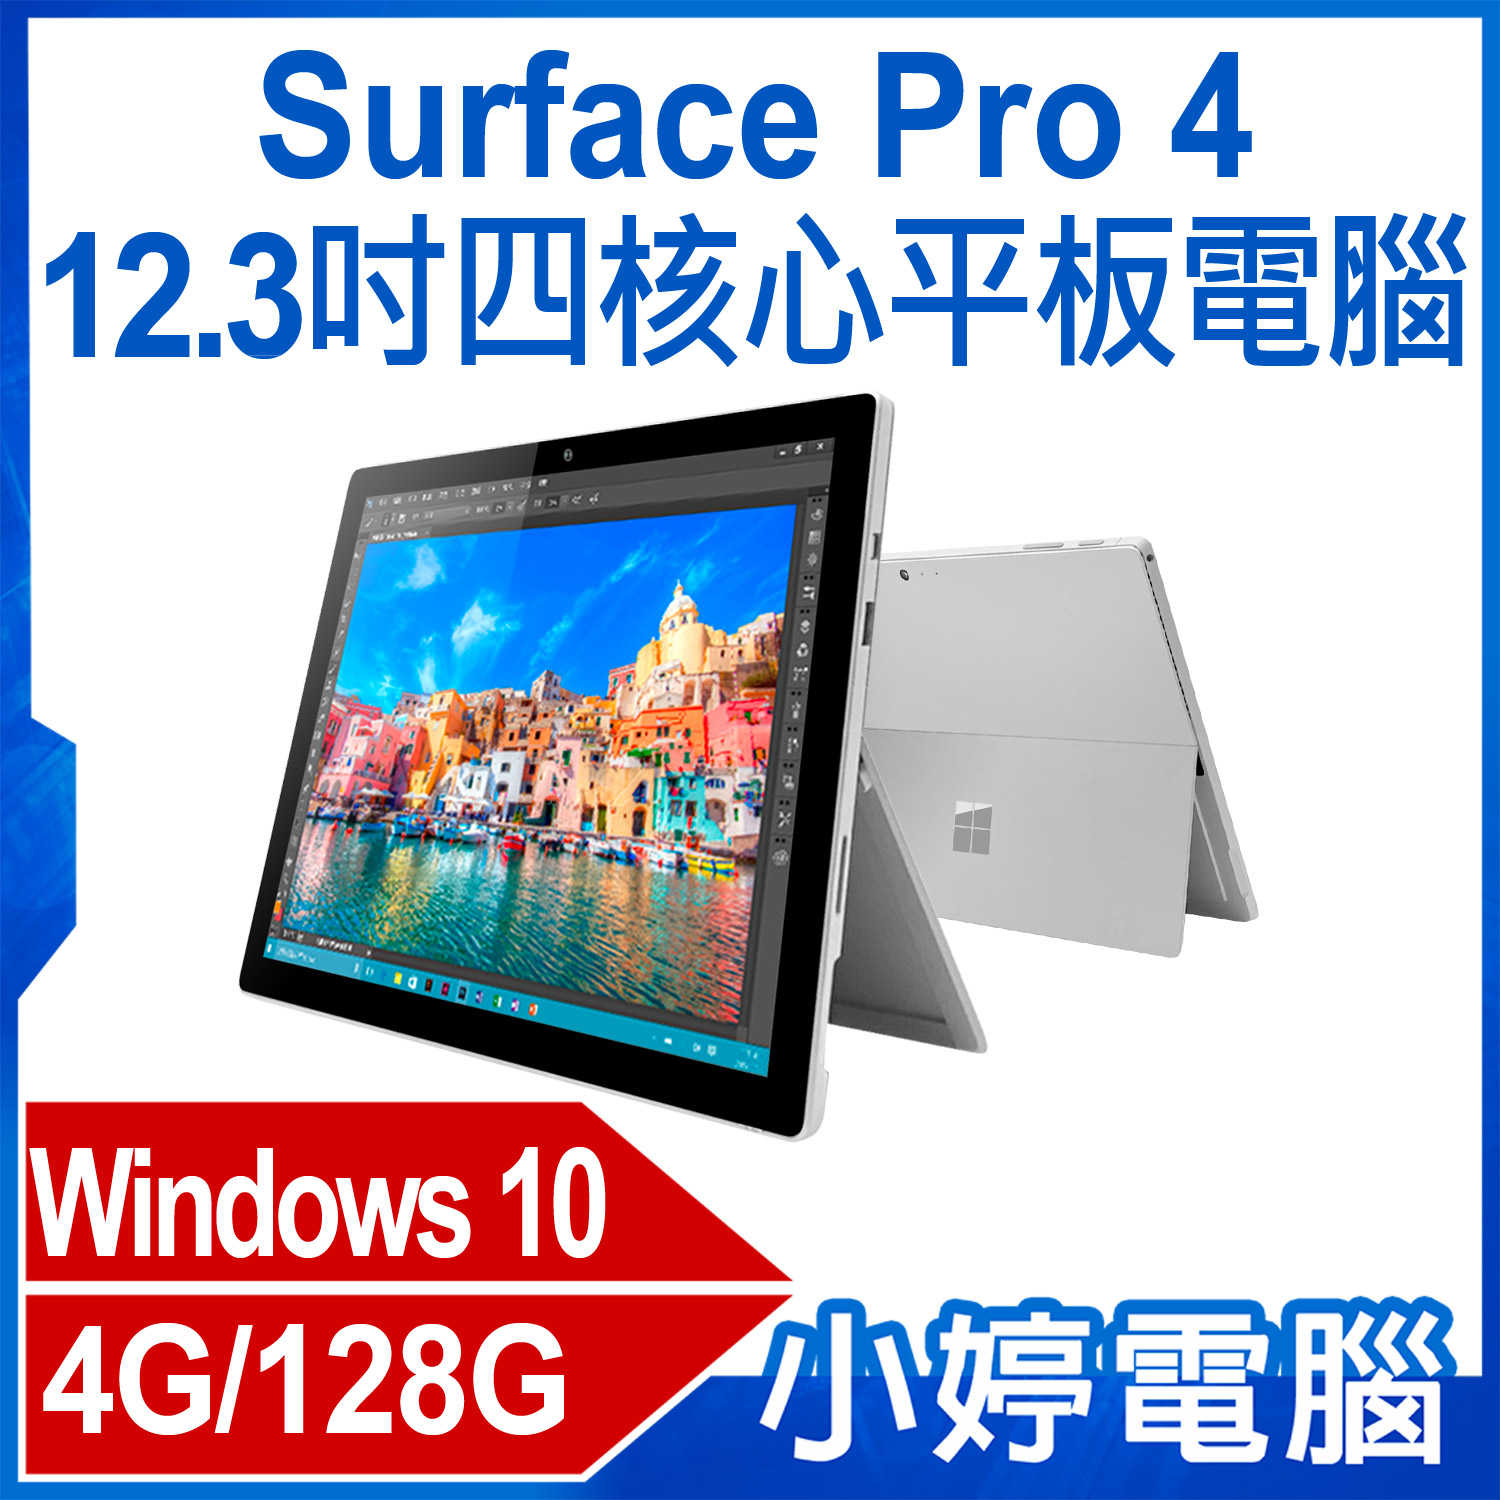 【小婷電腦】福利品 Surface Pro 4 12.3吋四核心平板電腦 Intel處理器 4G/128G